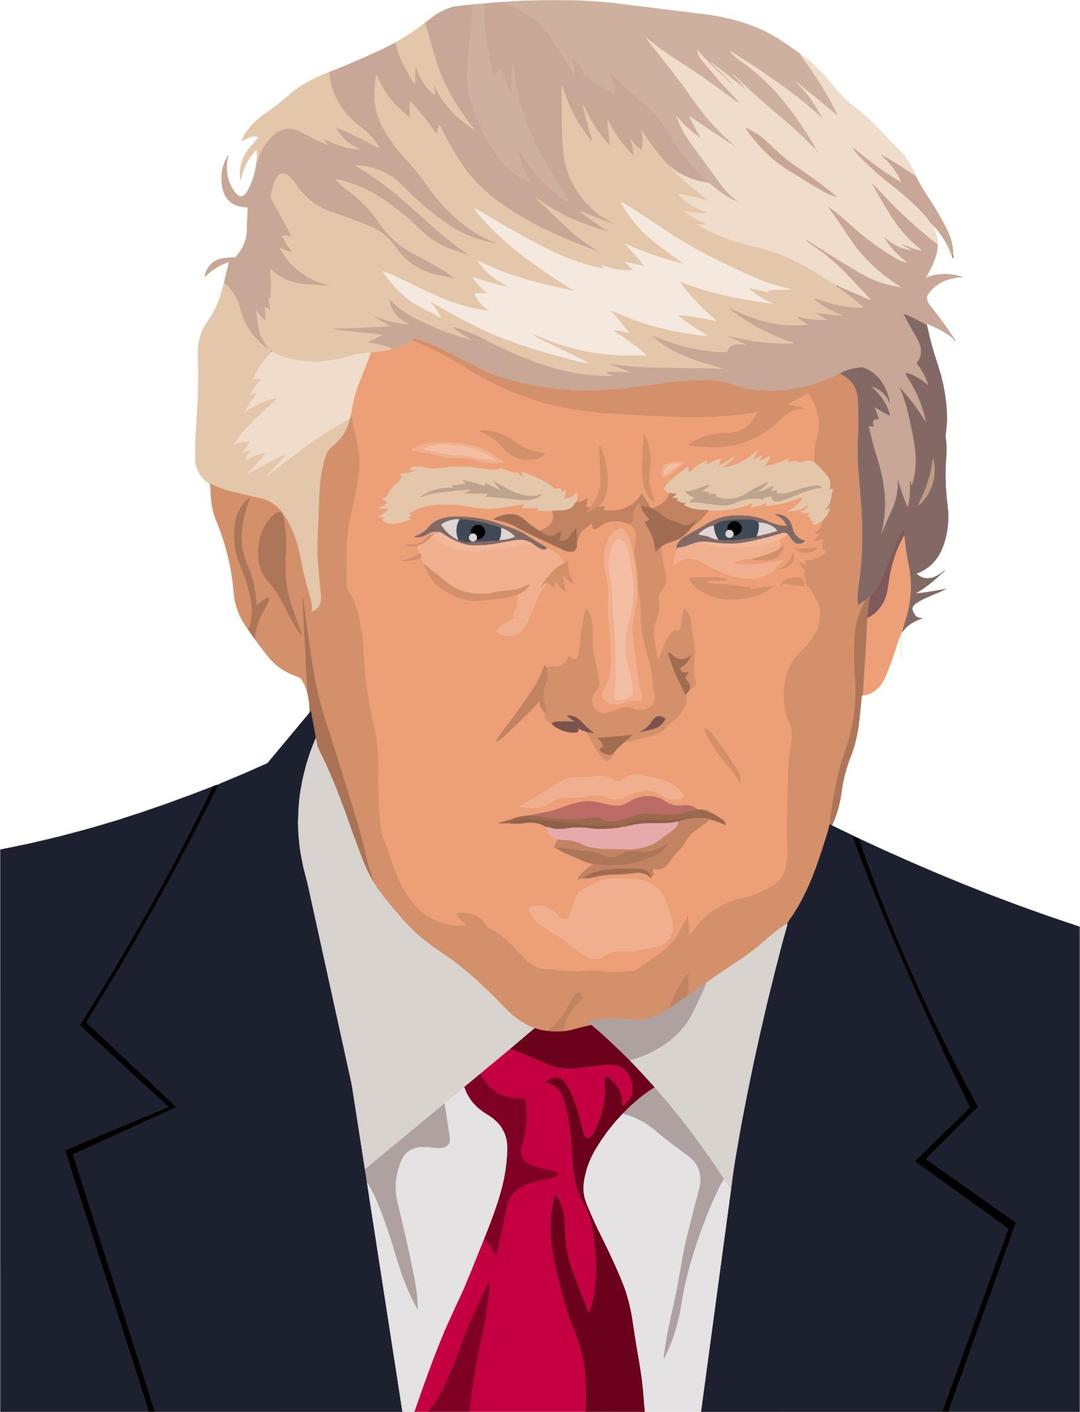 Donald Trump Portrait By Heblo png transparent